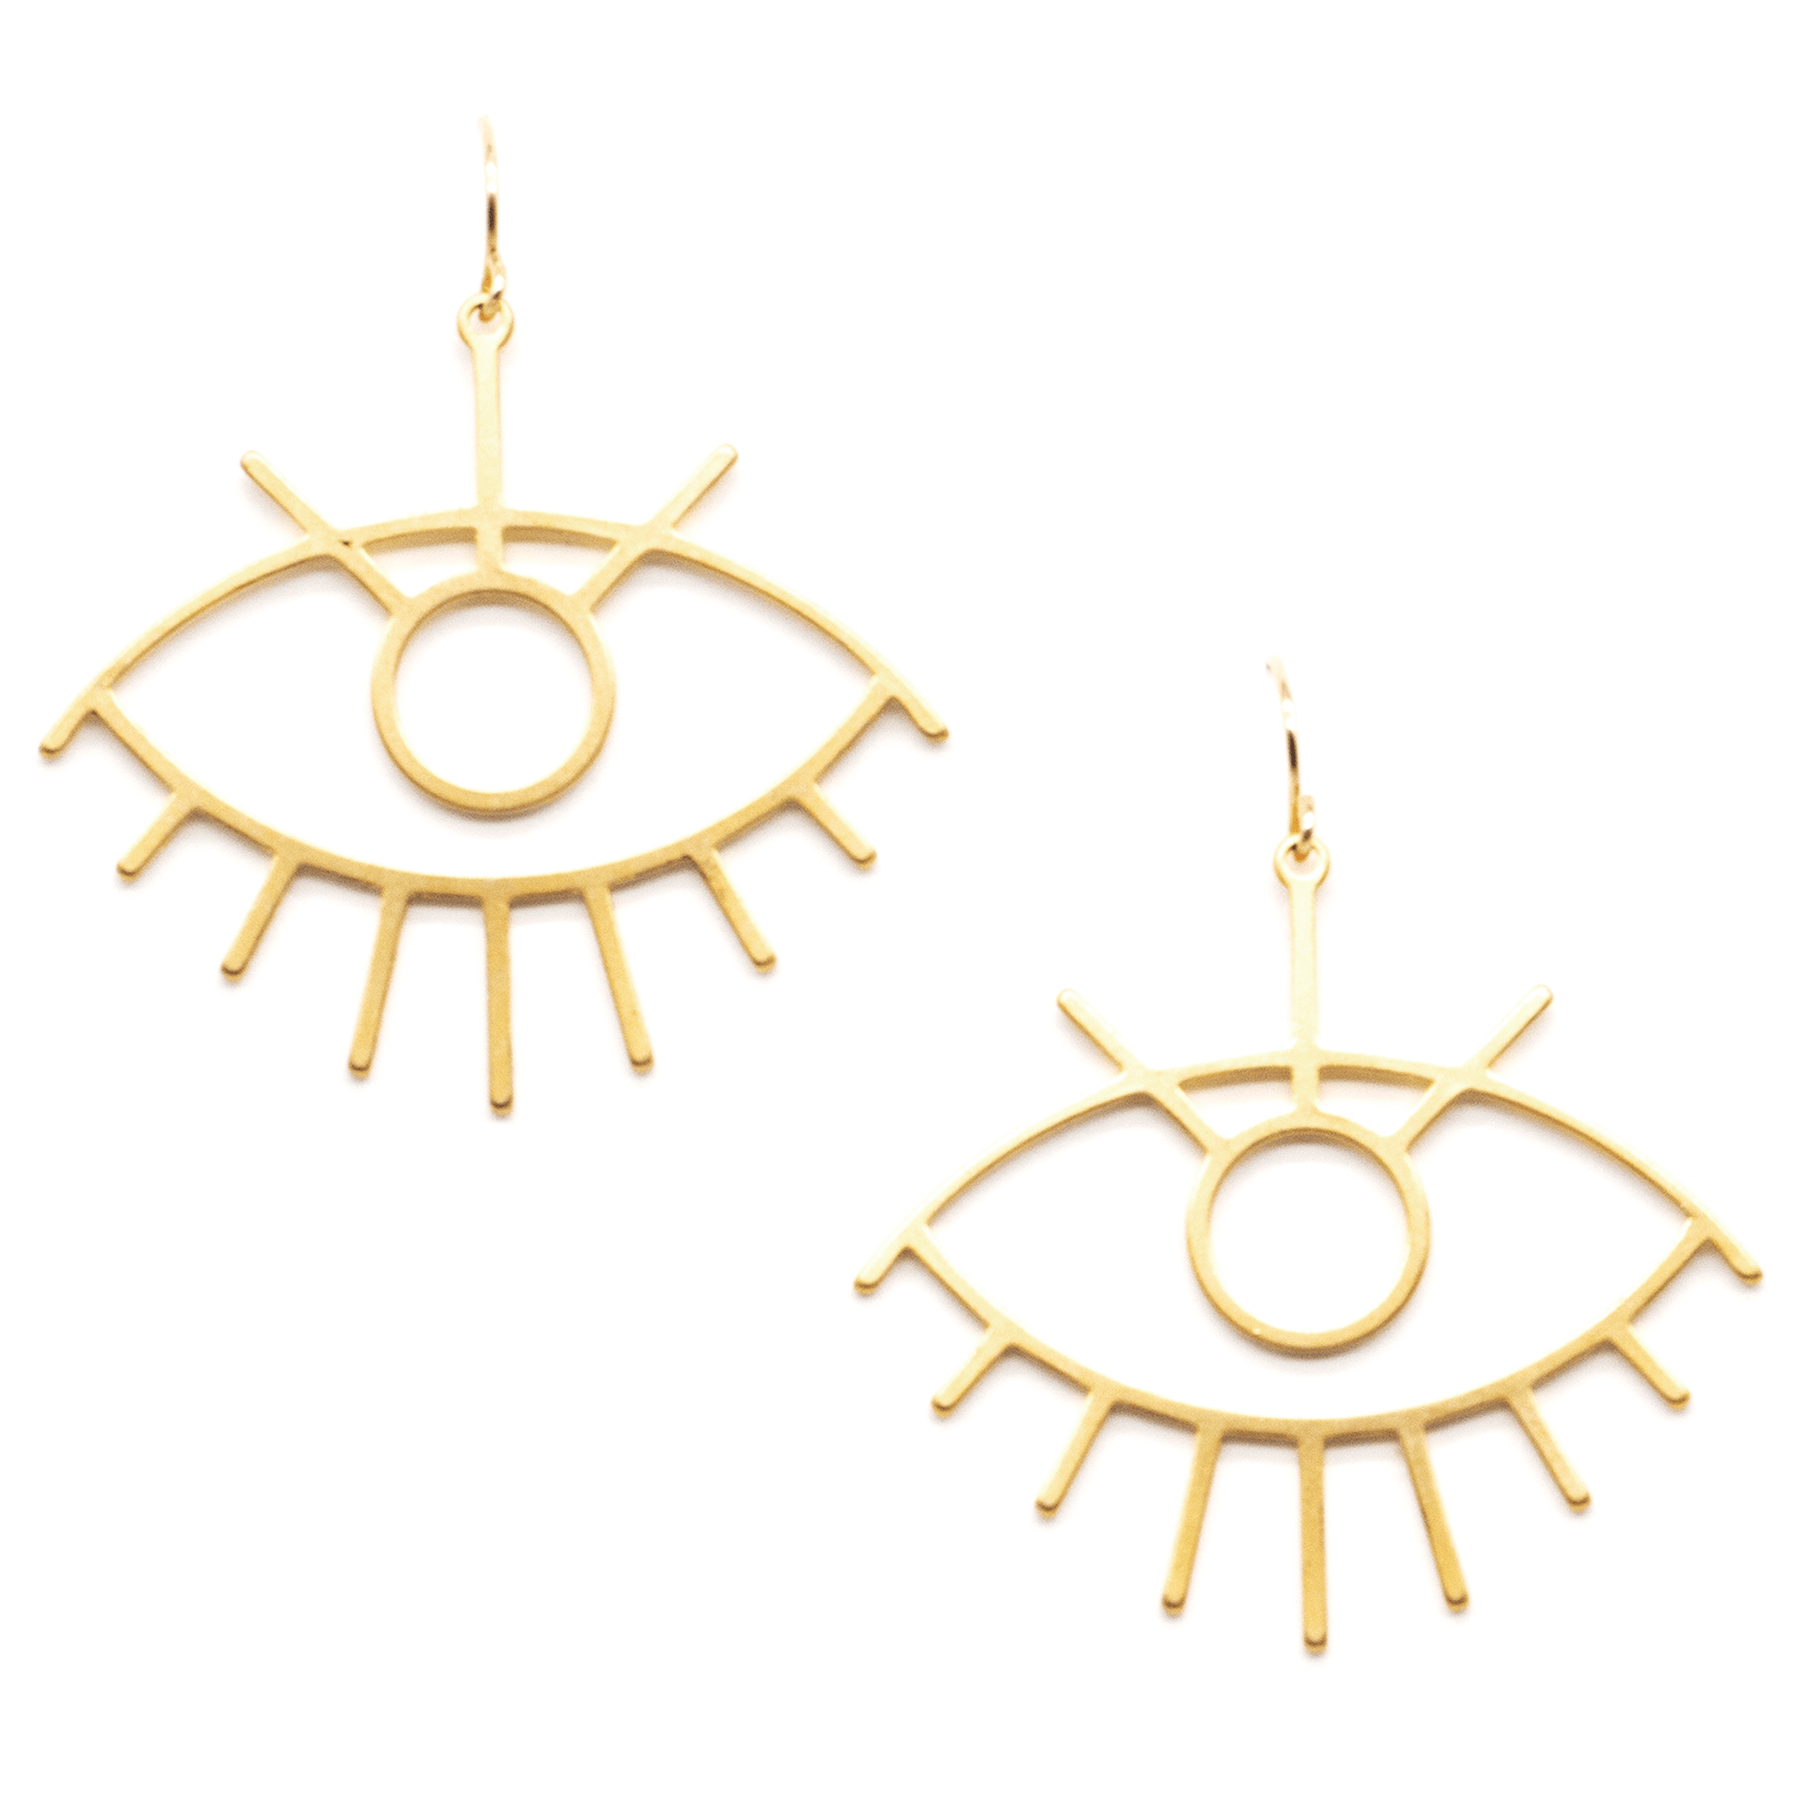 MaeMae Jewelry gold evil eye earrings on white background